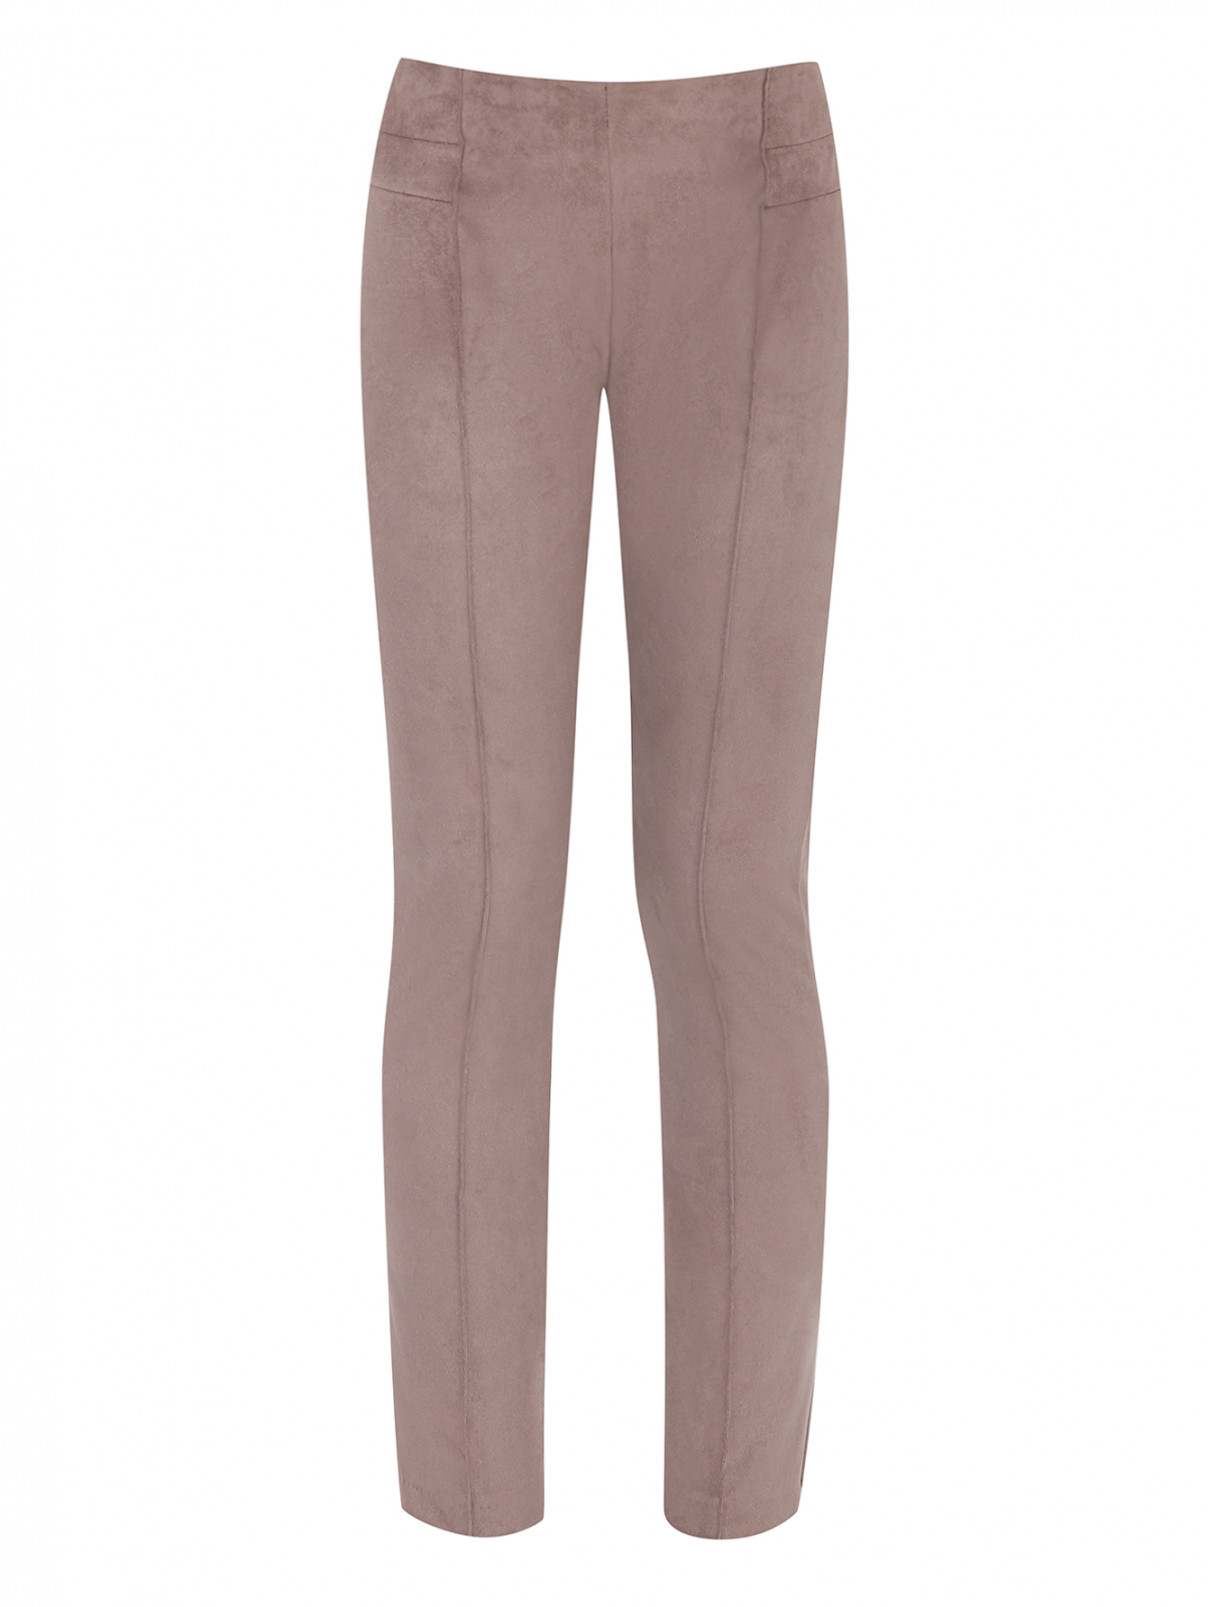 Замшевые брюки на резинке Nanan  –  Общий вид  – Цвет:  Коричневый